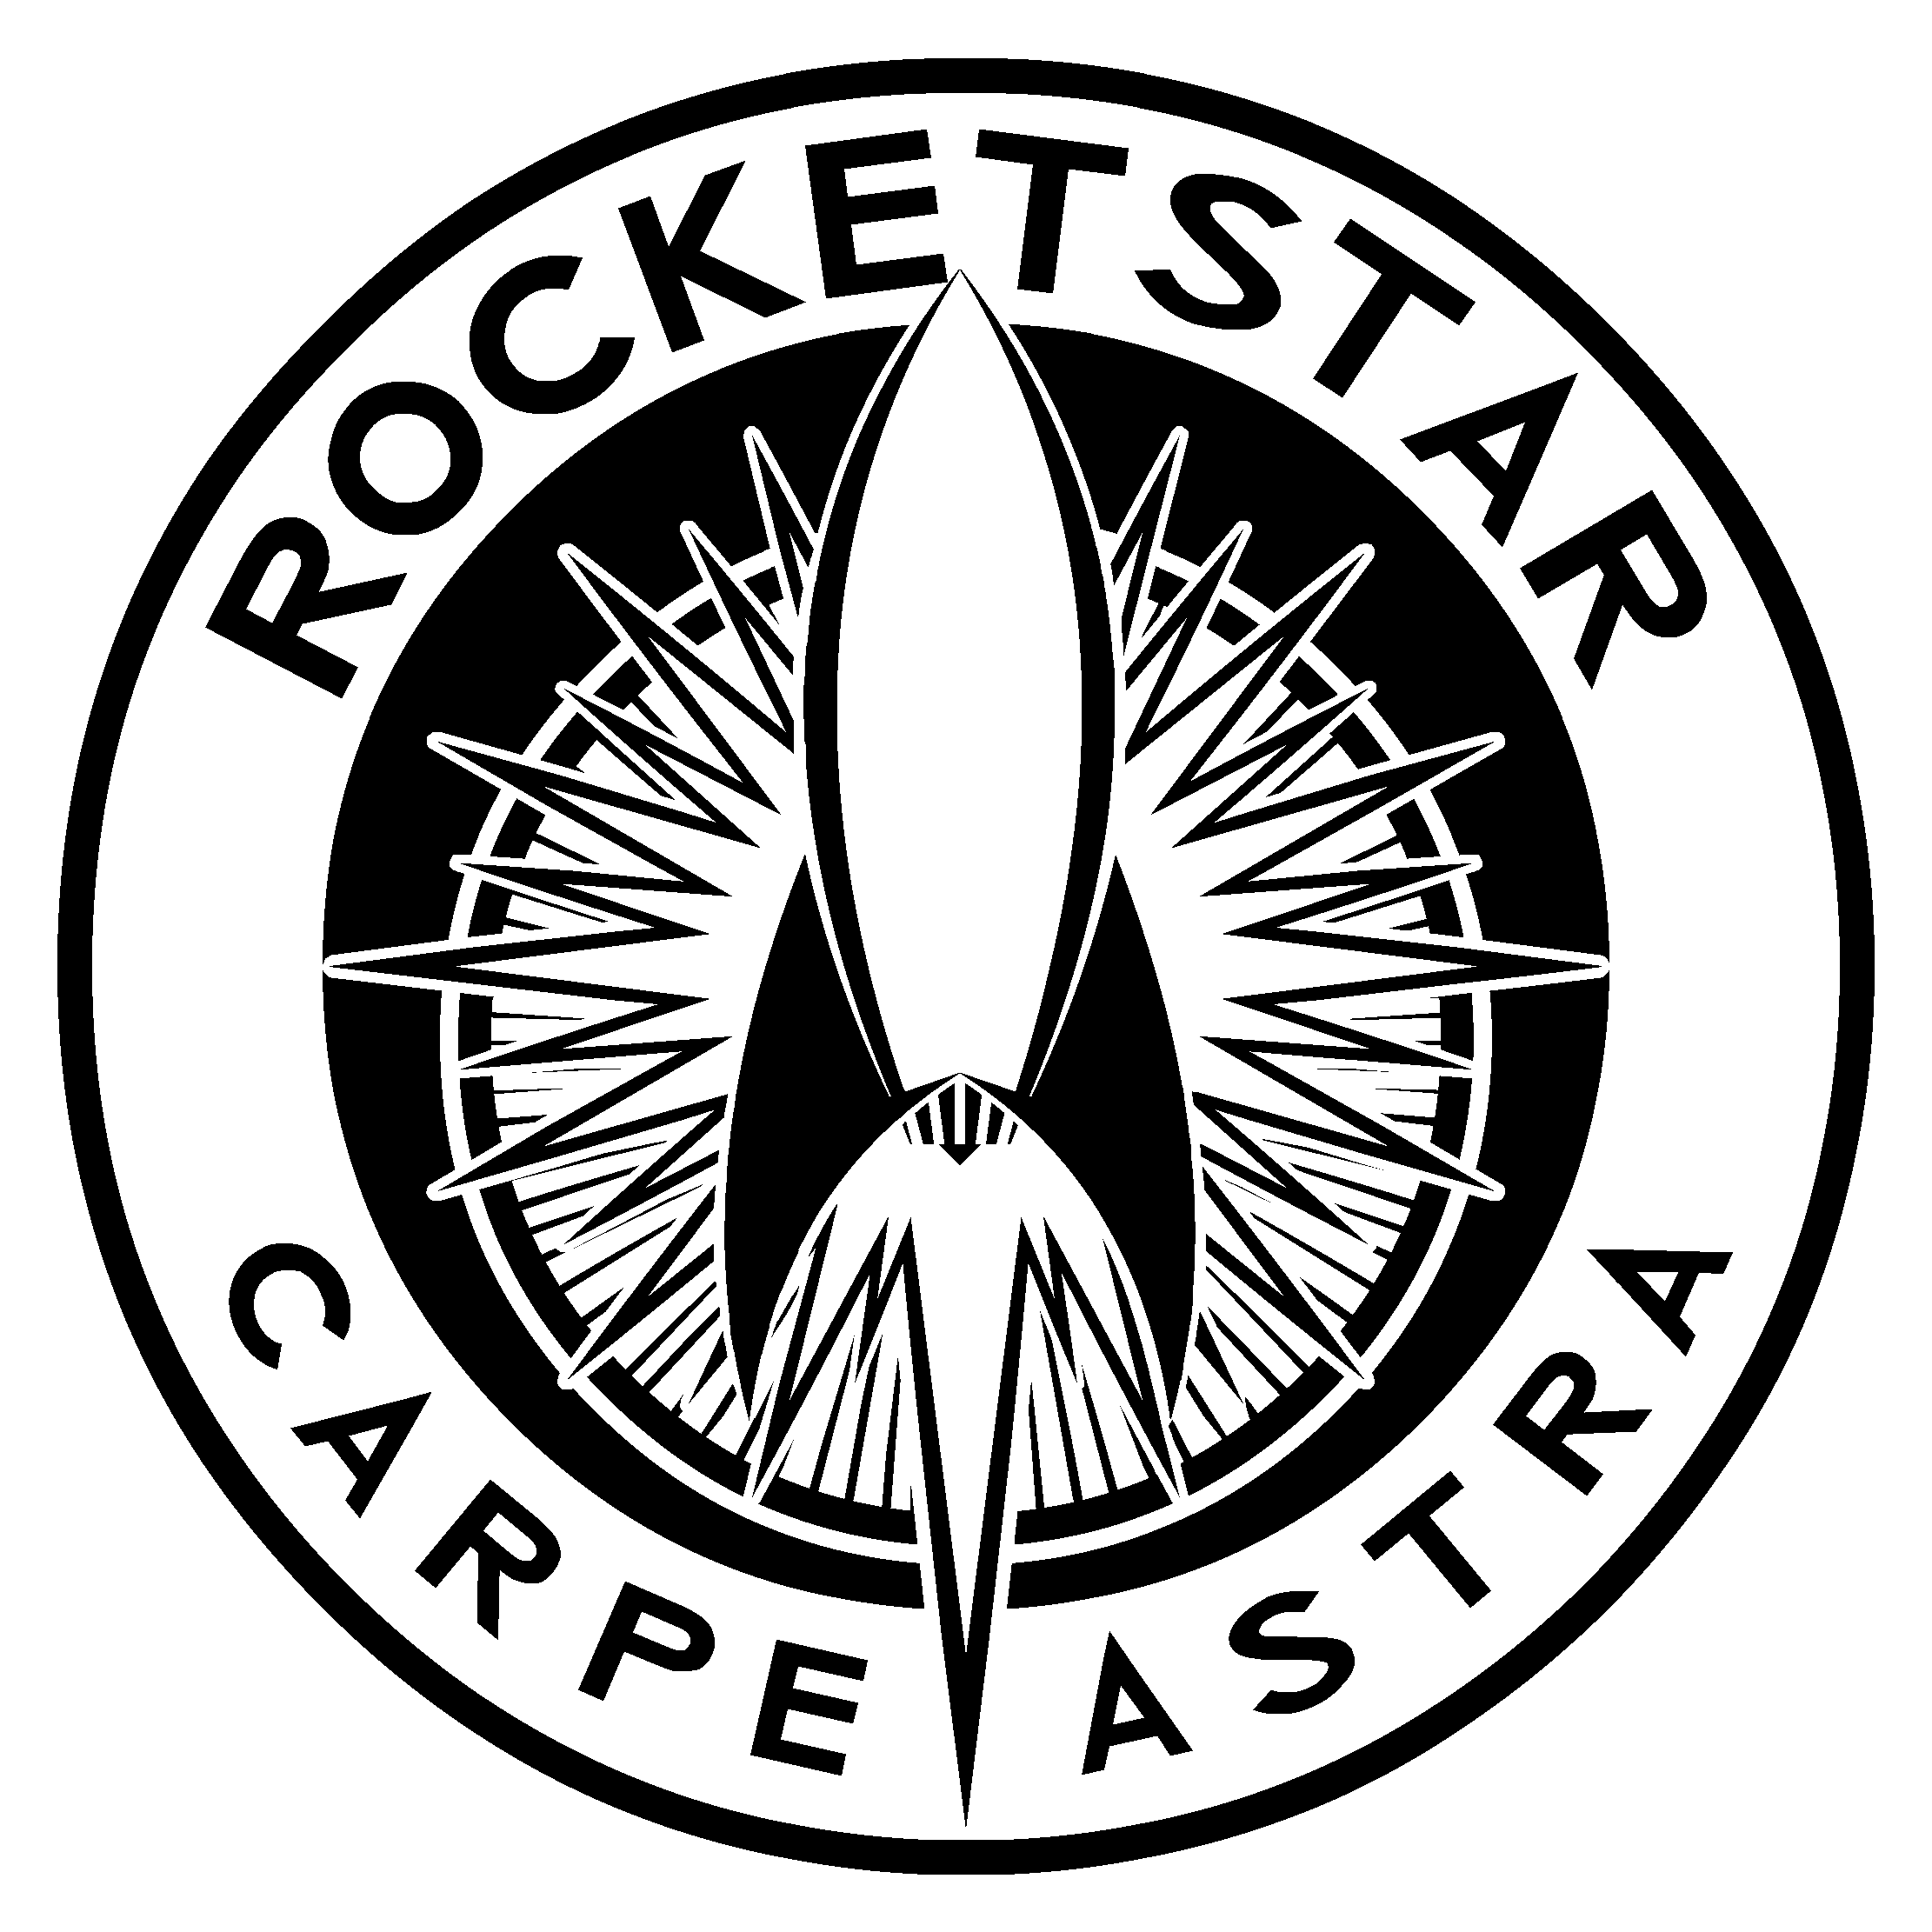 Rocketstar